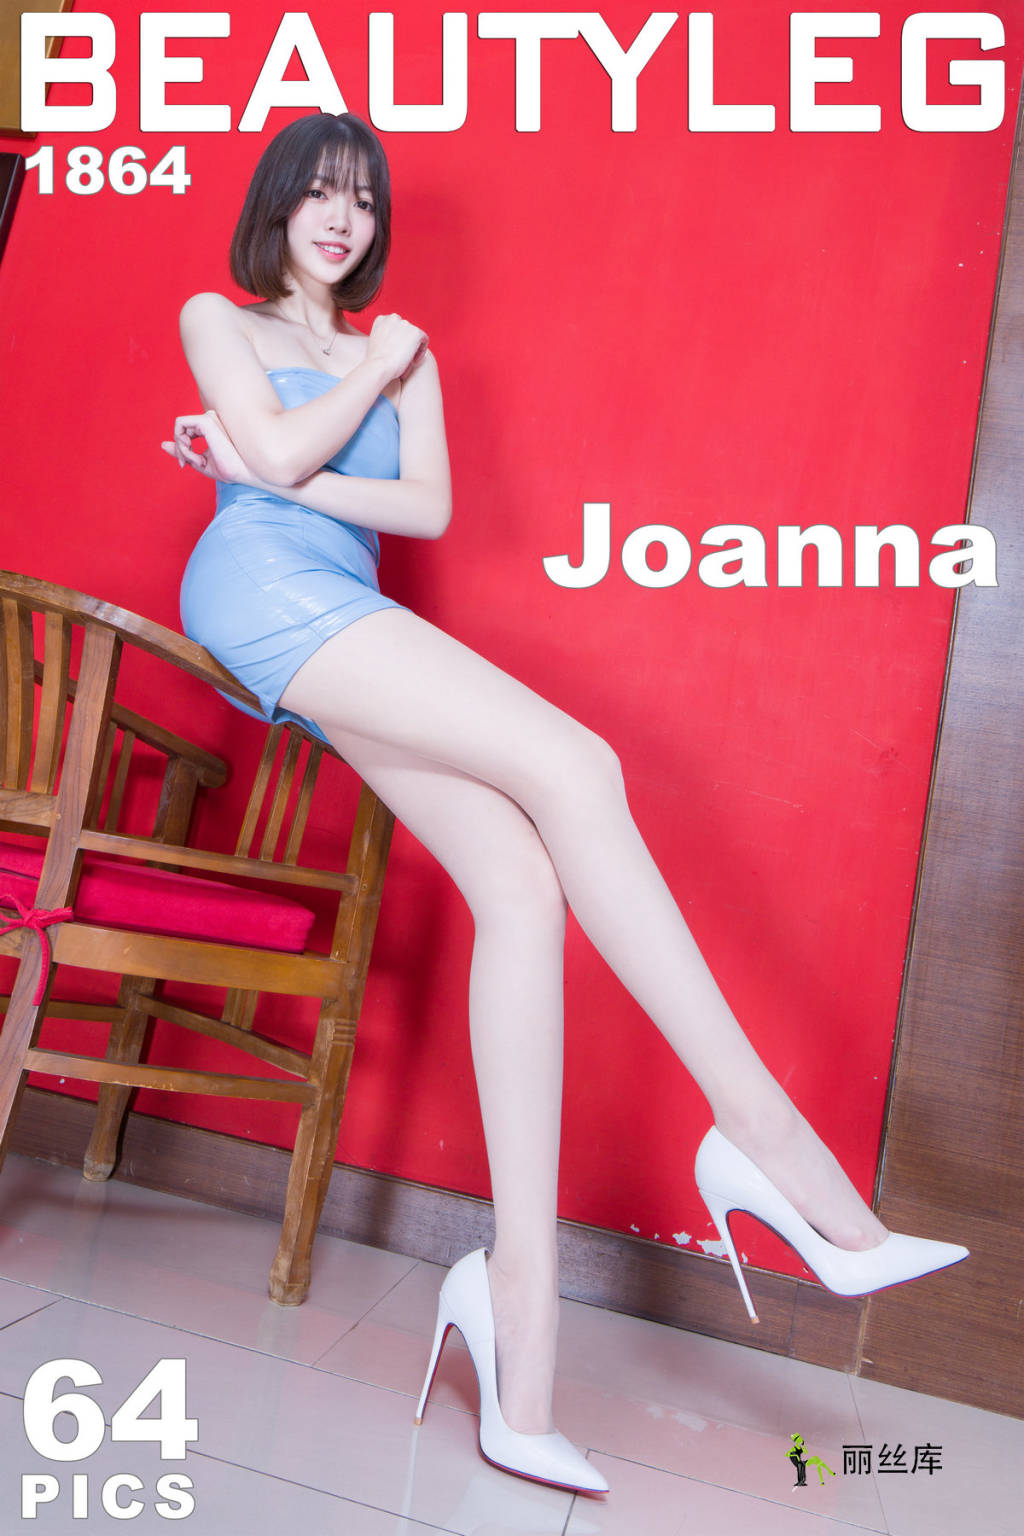 Beautyleg ģд  2020.01.06 No.1864 Joanna_˿